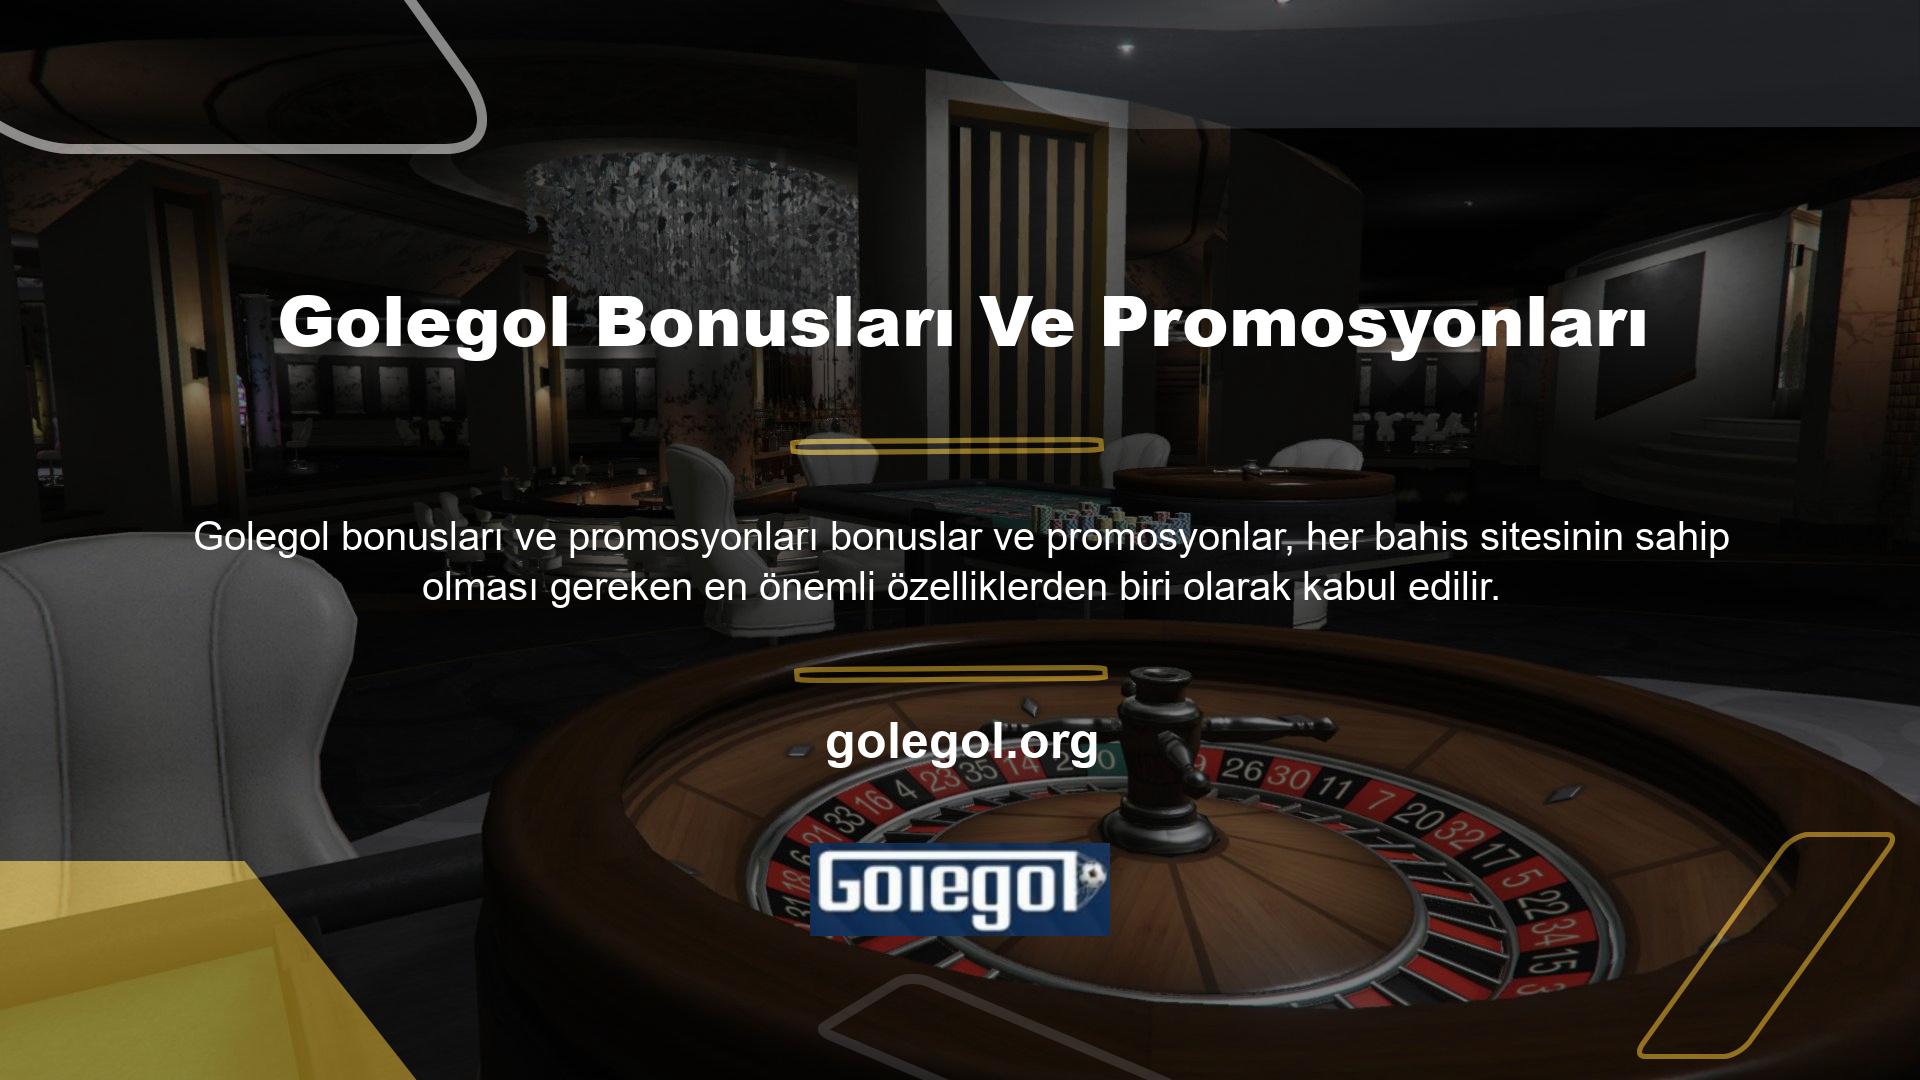 Golegol web sitesi, kullanıcılarına sunduğu promosyon ve teşviklerde de müşteri memnuniyetini garanti etmektedir